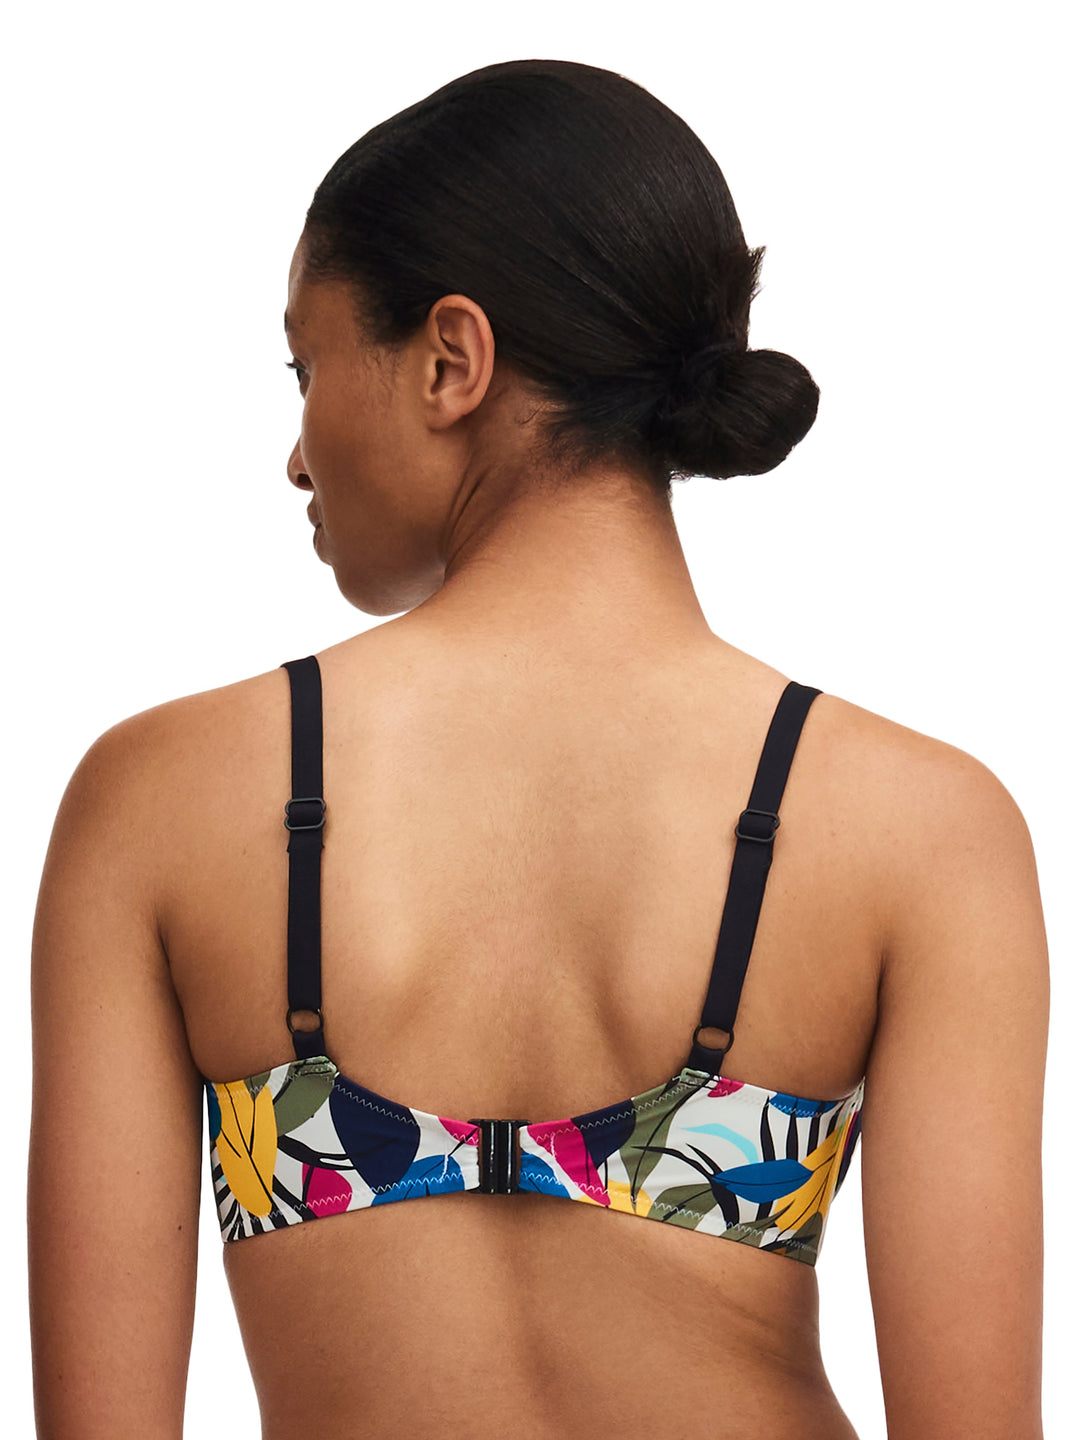 Trajes de Baño Femilet - Bikini Honduras Cubierto con Aros (Ajustable) Bikini Copa Completa Hojas Multicolor Trajes de Baño Femilet